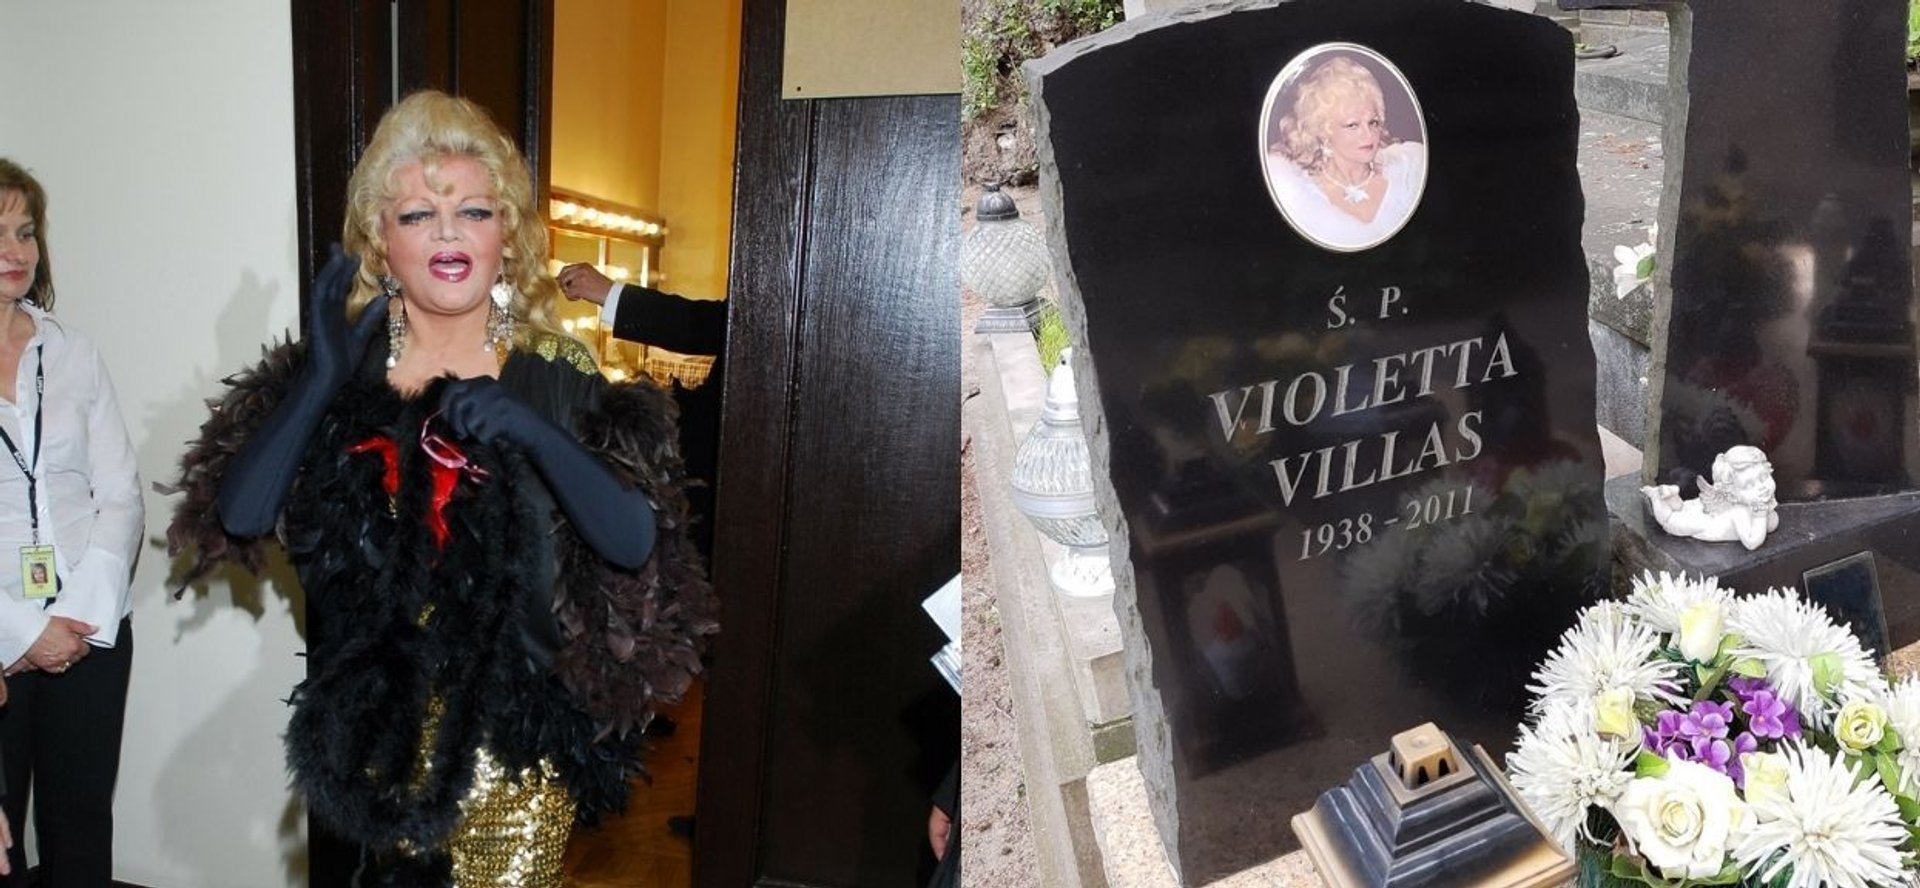 Violetta Villas i jej nagrobek